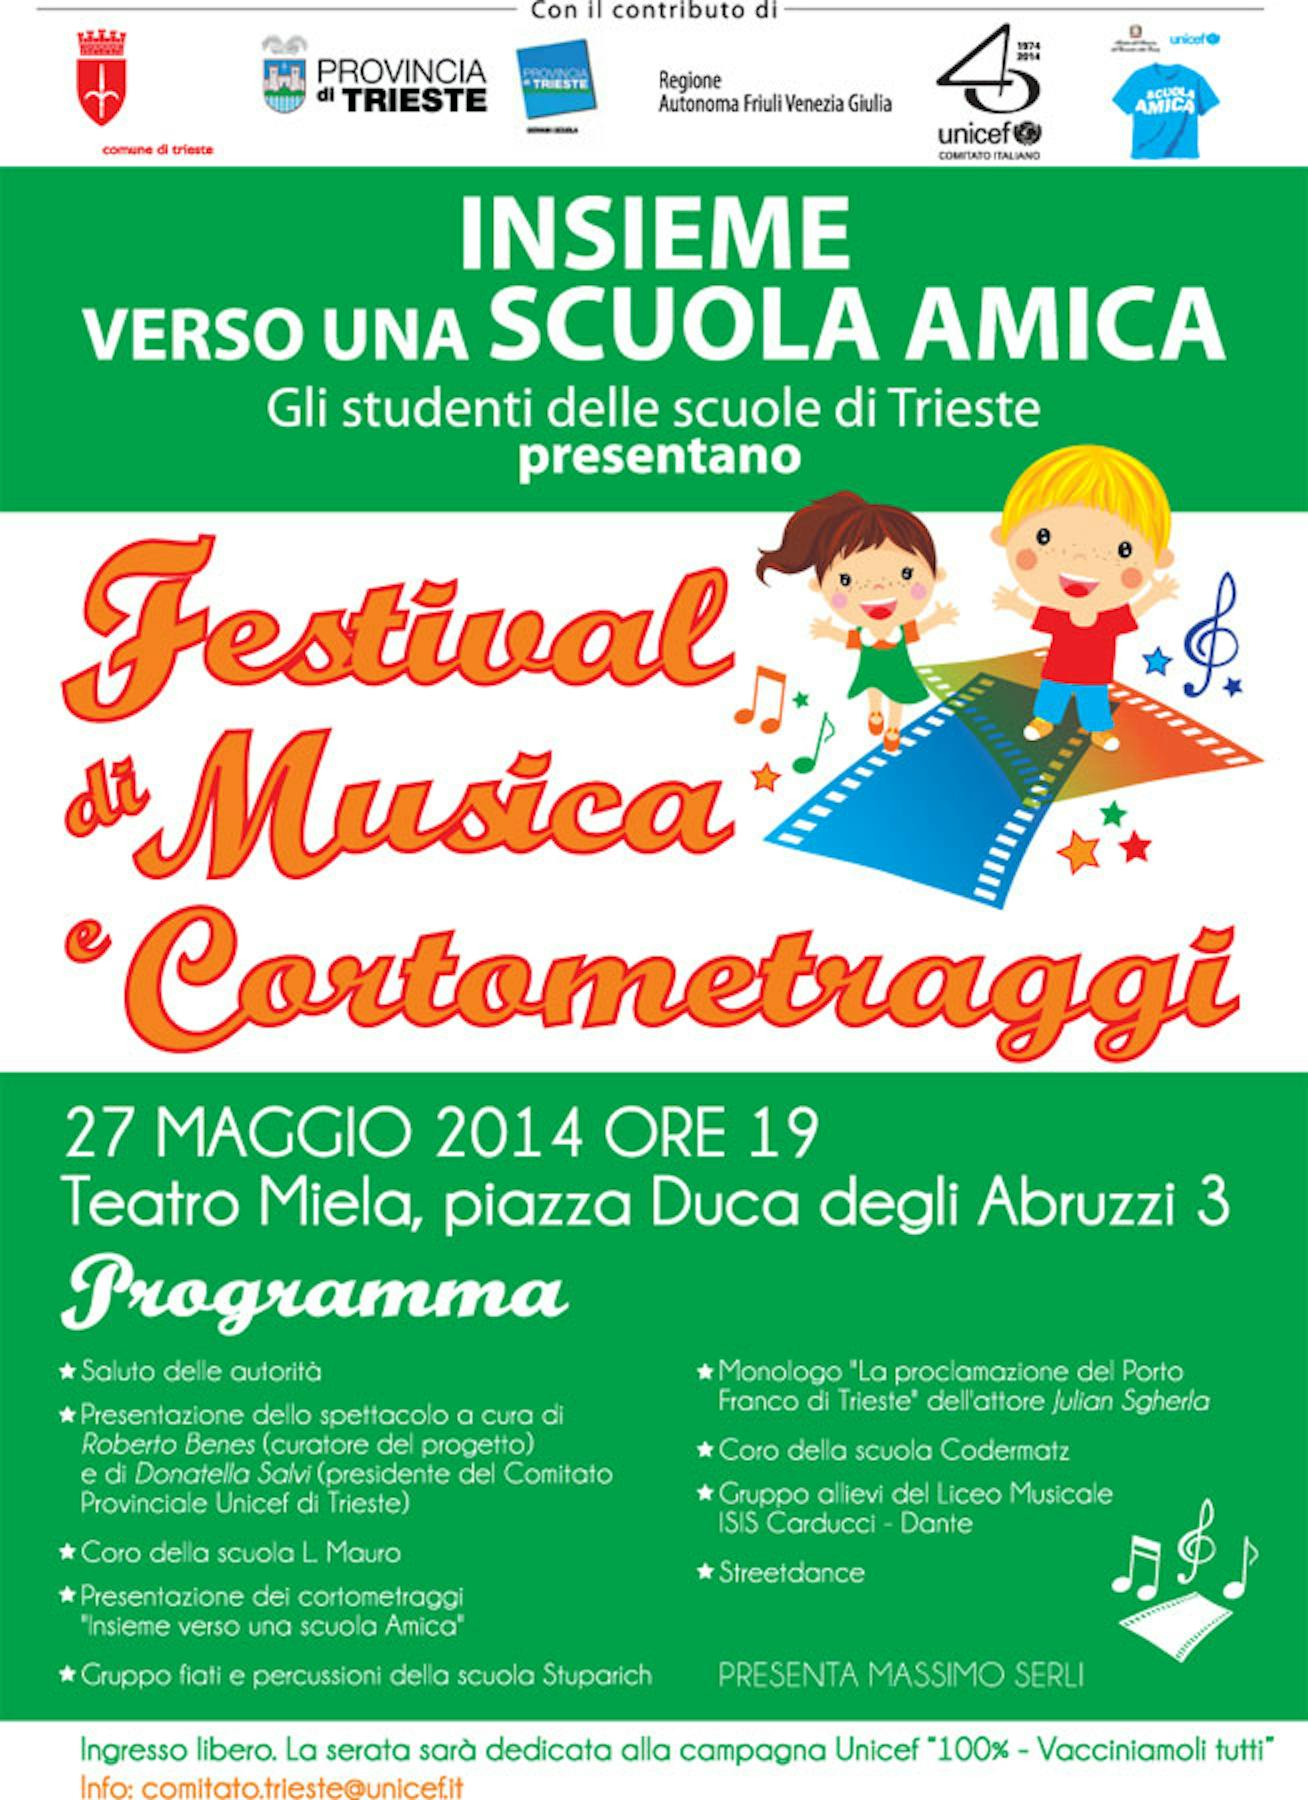 Trieste: tutto pronto per lo spettacolo delle Scuole Amiche UNICEF